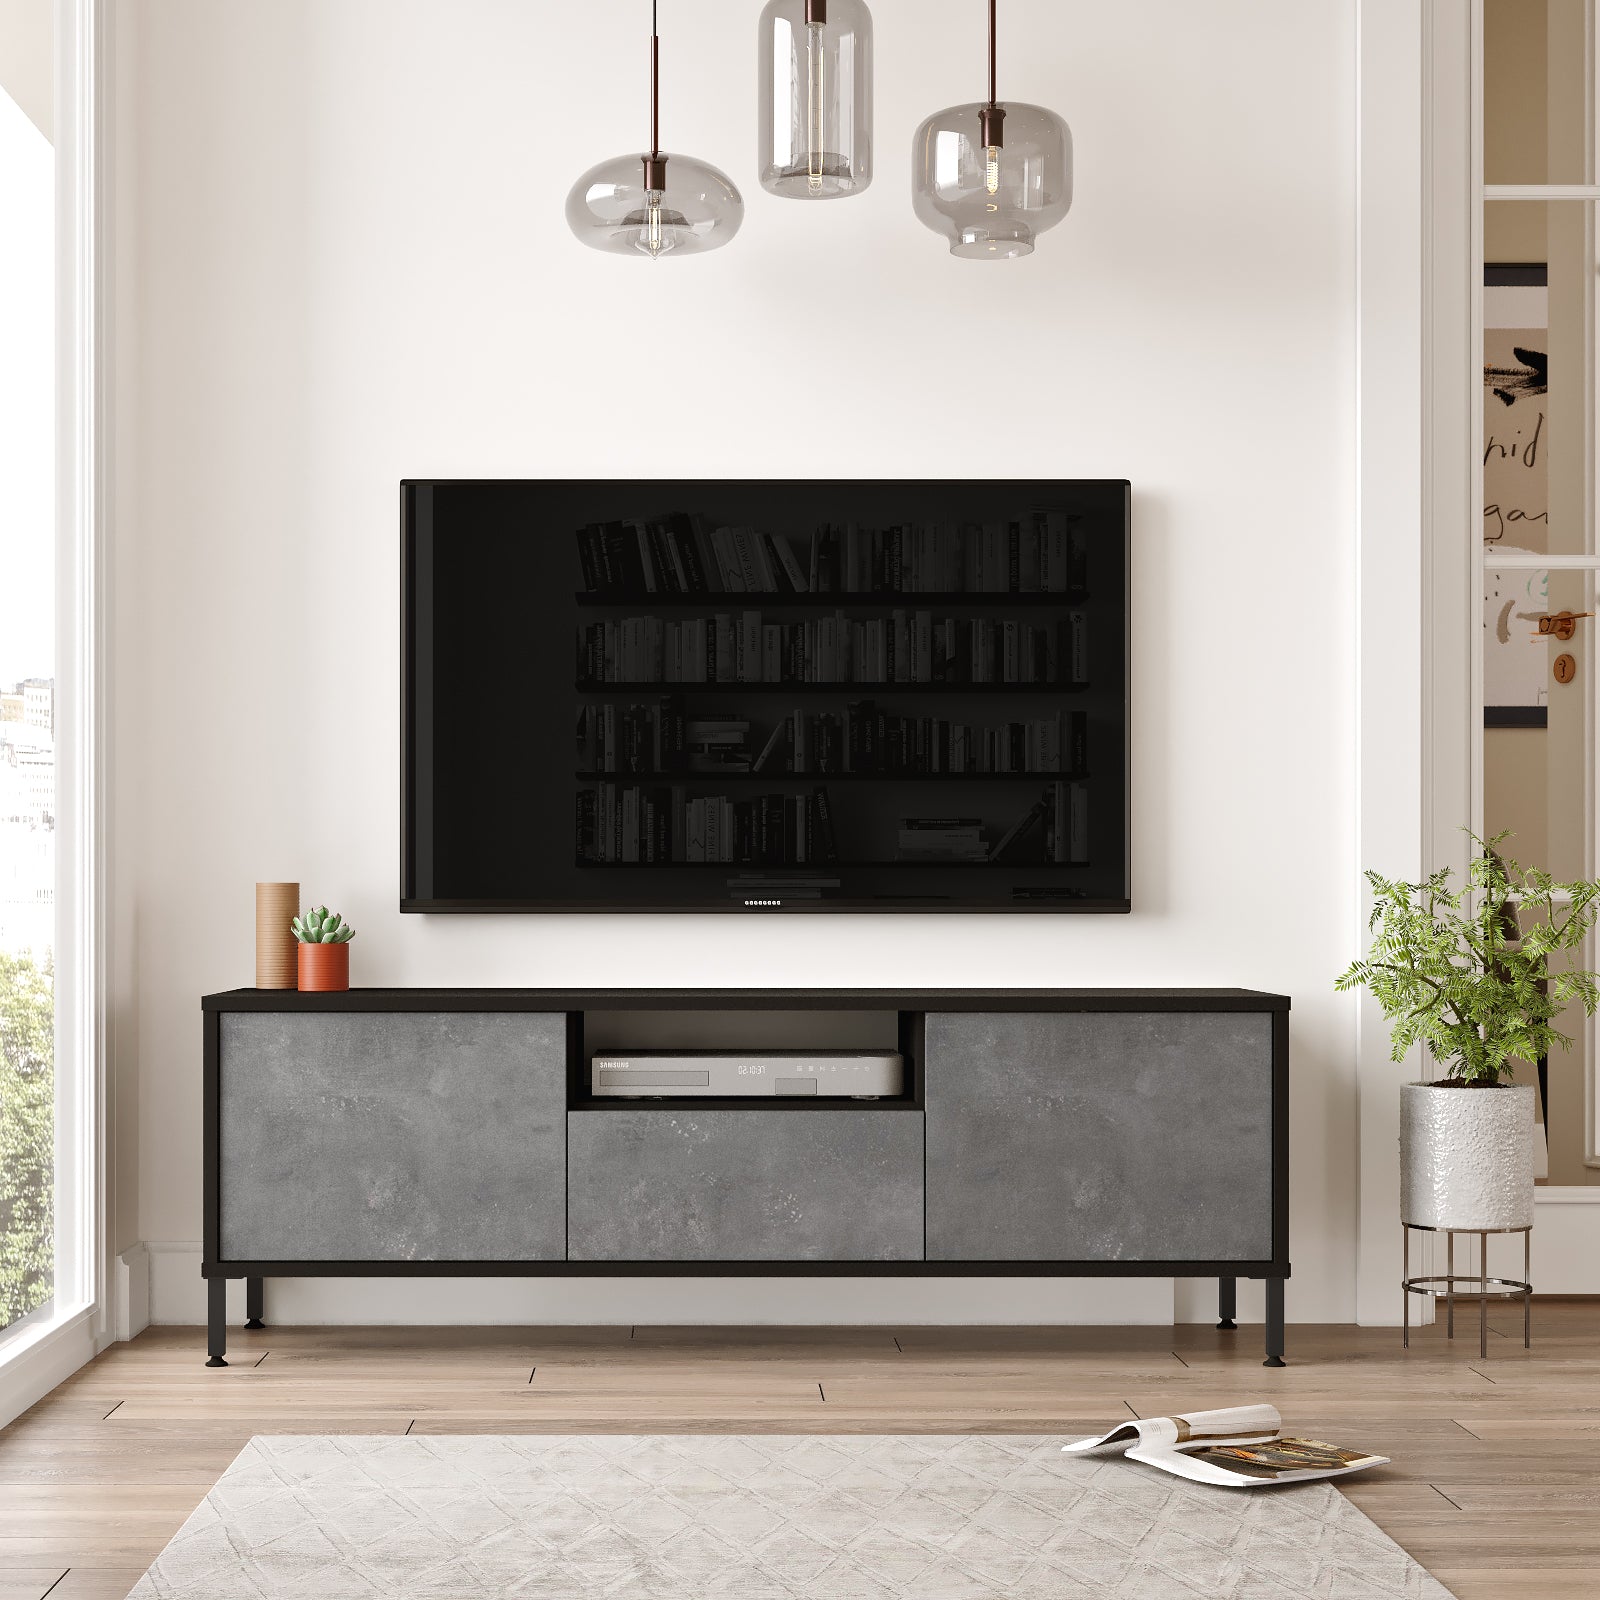 noir-gris-Meuble TV FOCUS avec rangements spacieux-idéal pour intégrer vos appareils multimédias avec style.